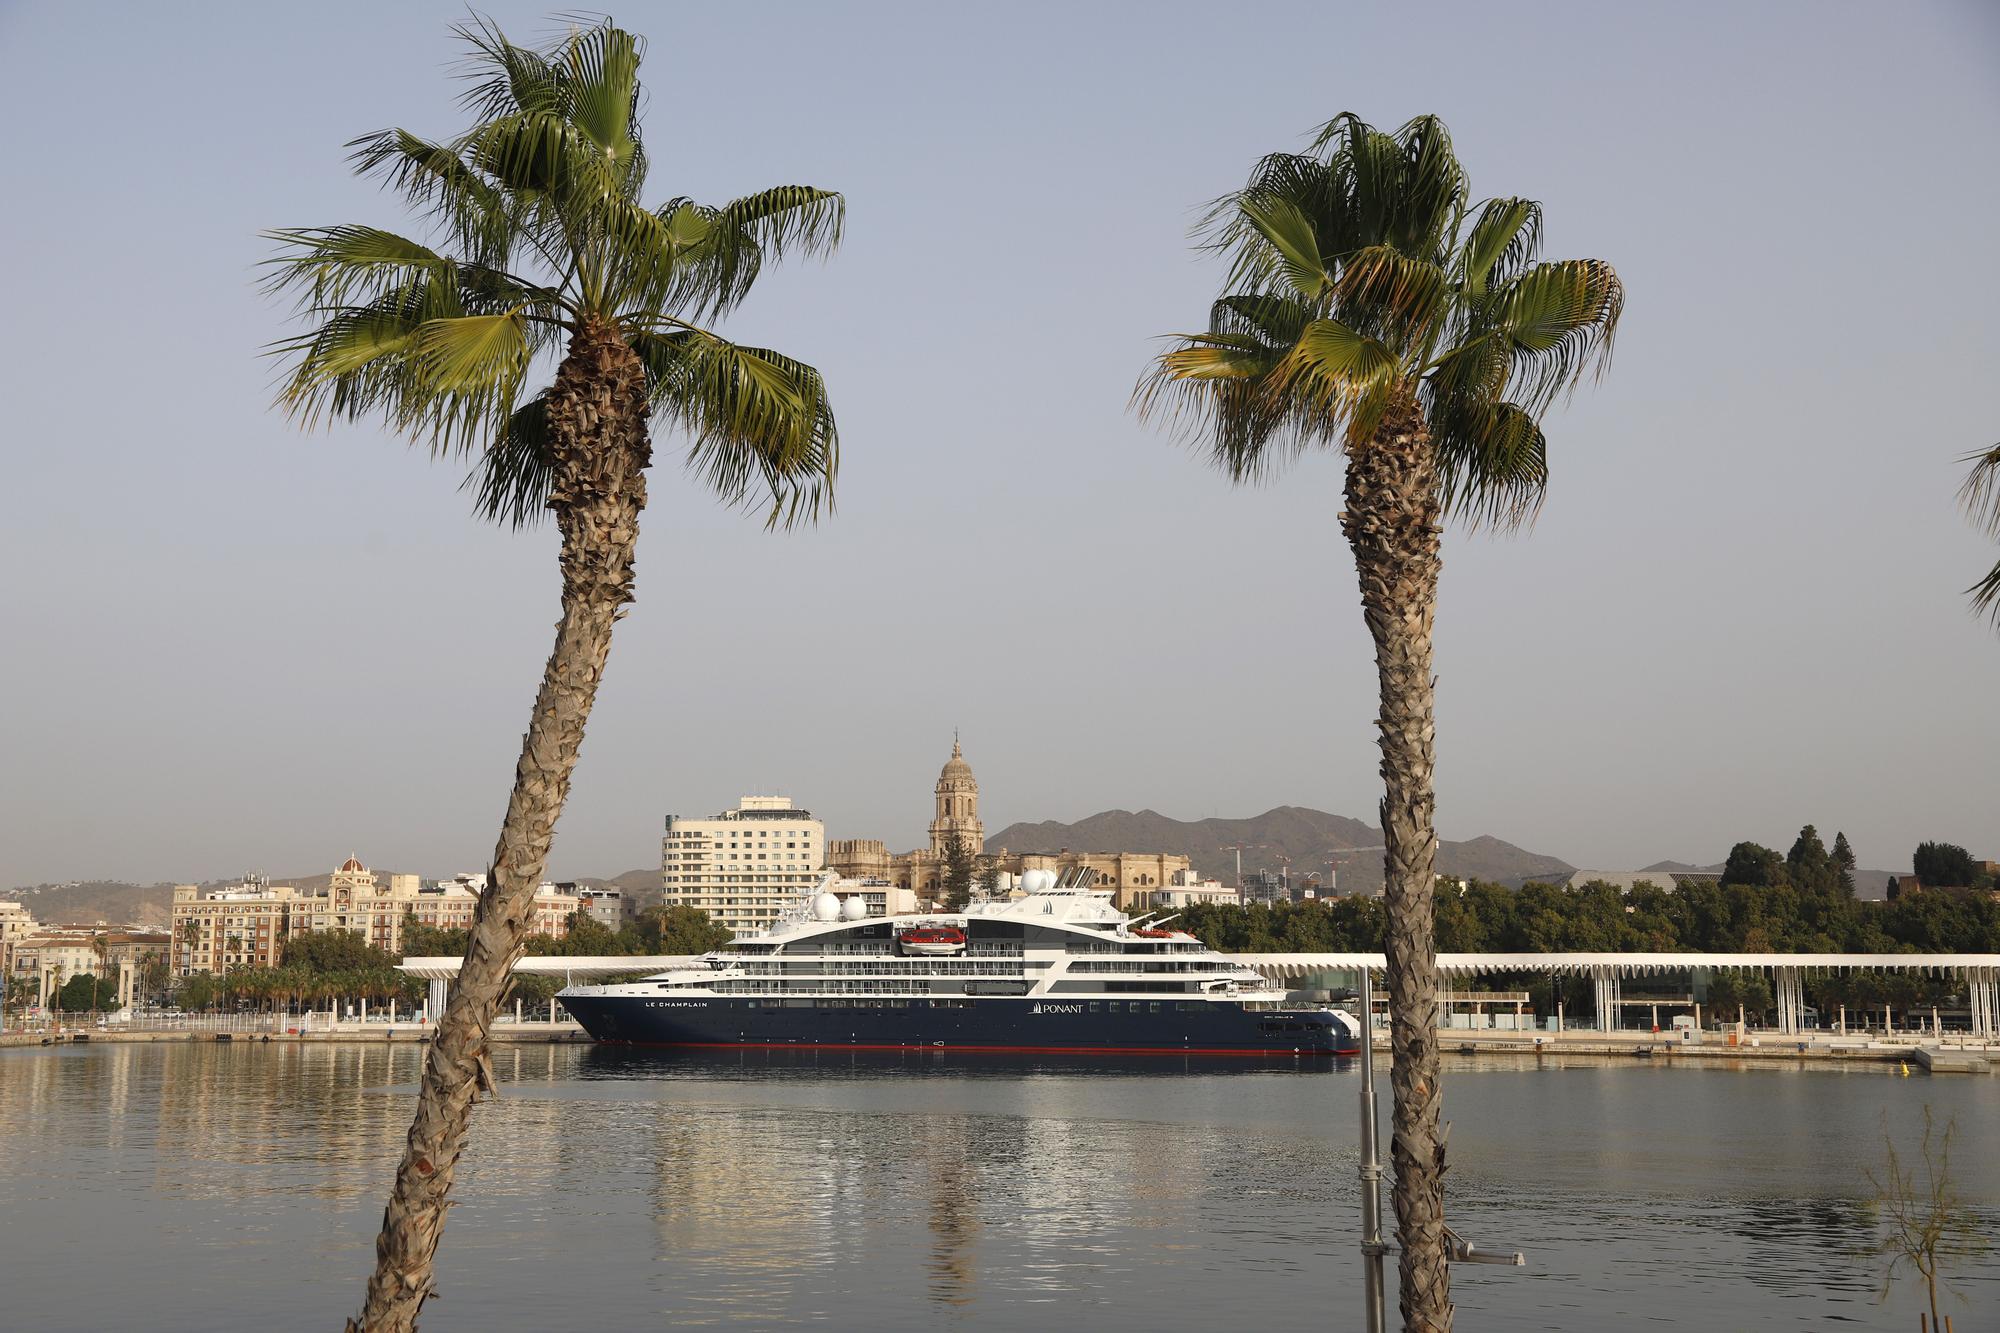 Atraca en el Puerto de Málaga Le Champlain: el crucero del lujo y la exclusividad